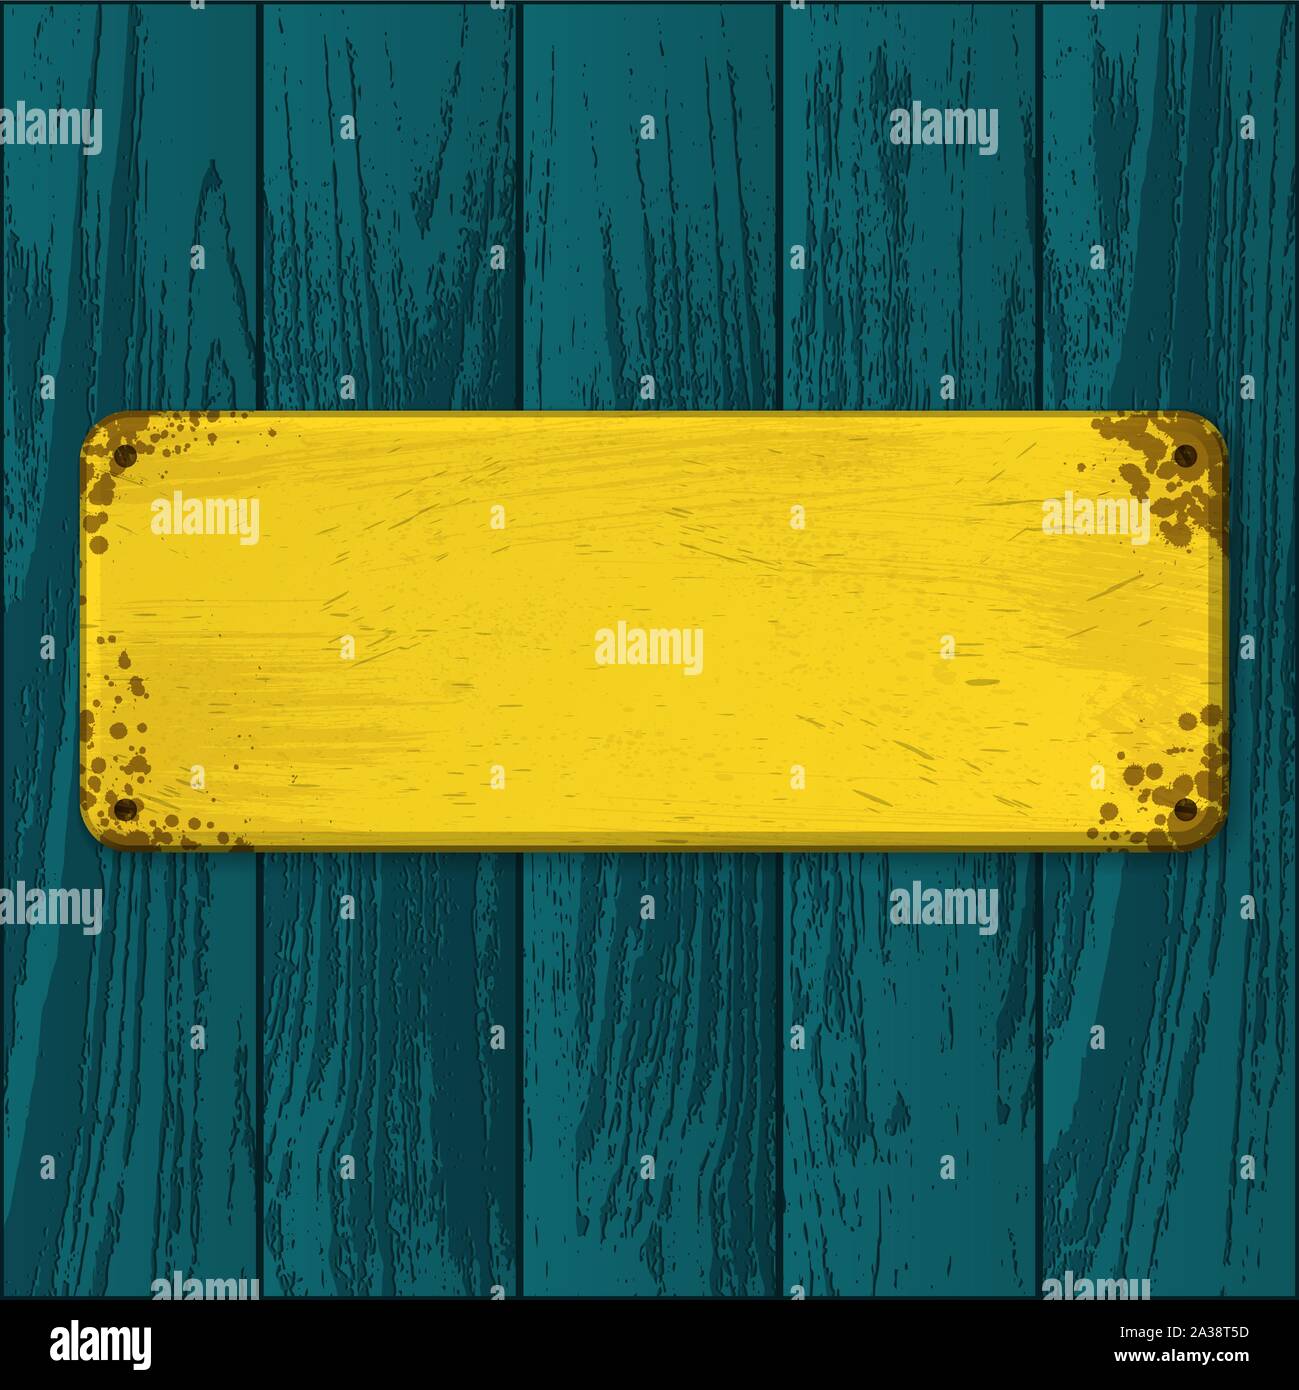 Blaue Parkett oder Laminat Textur mit Gelb leer alten grunge Typenschild Stock Vektor